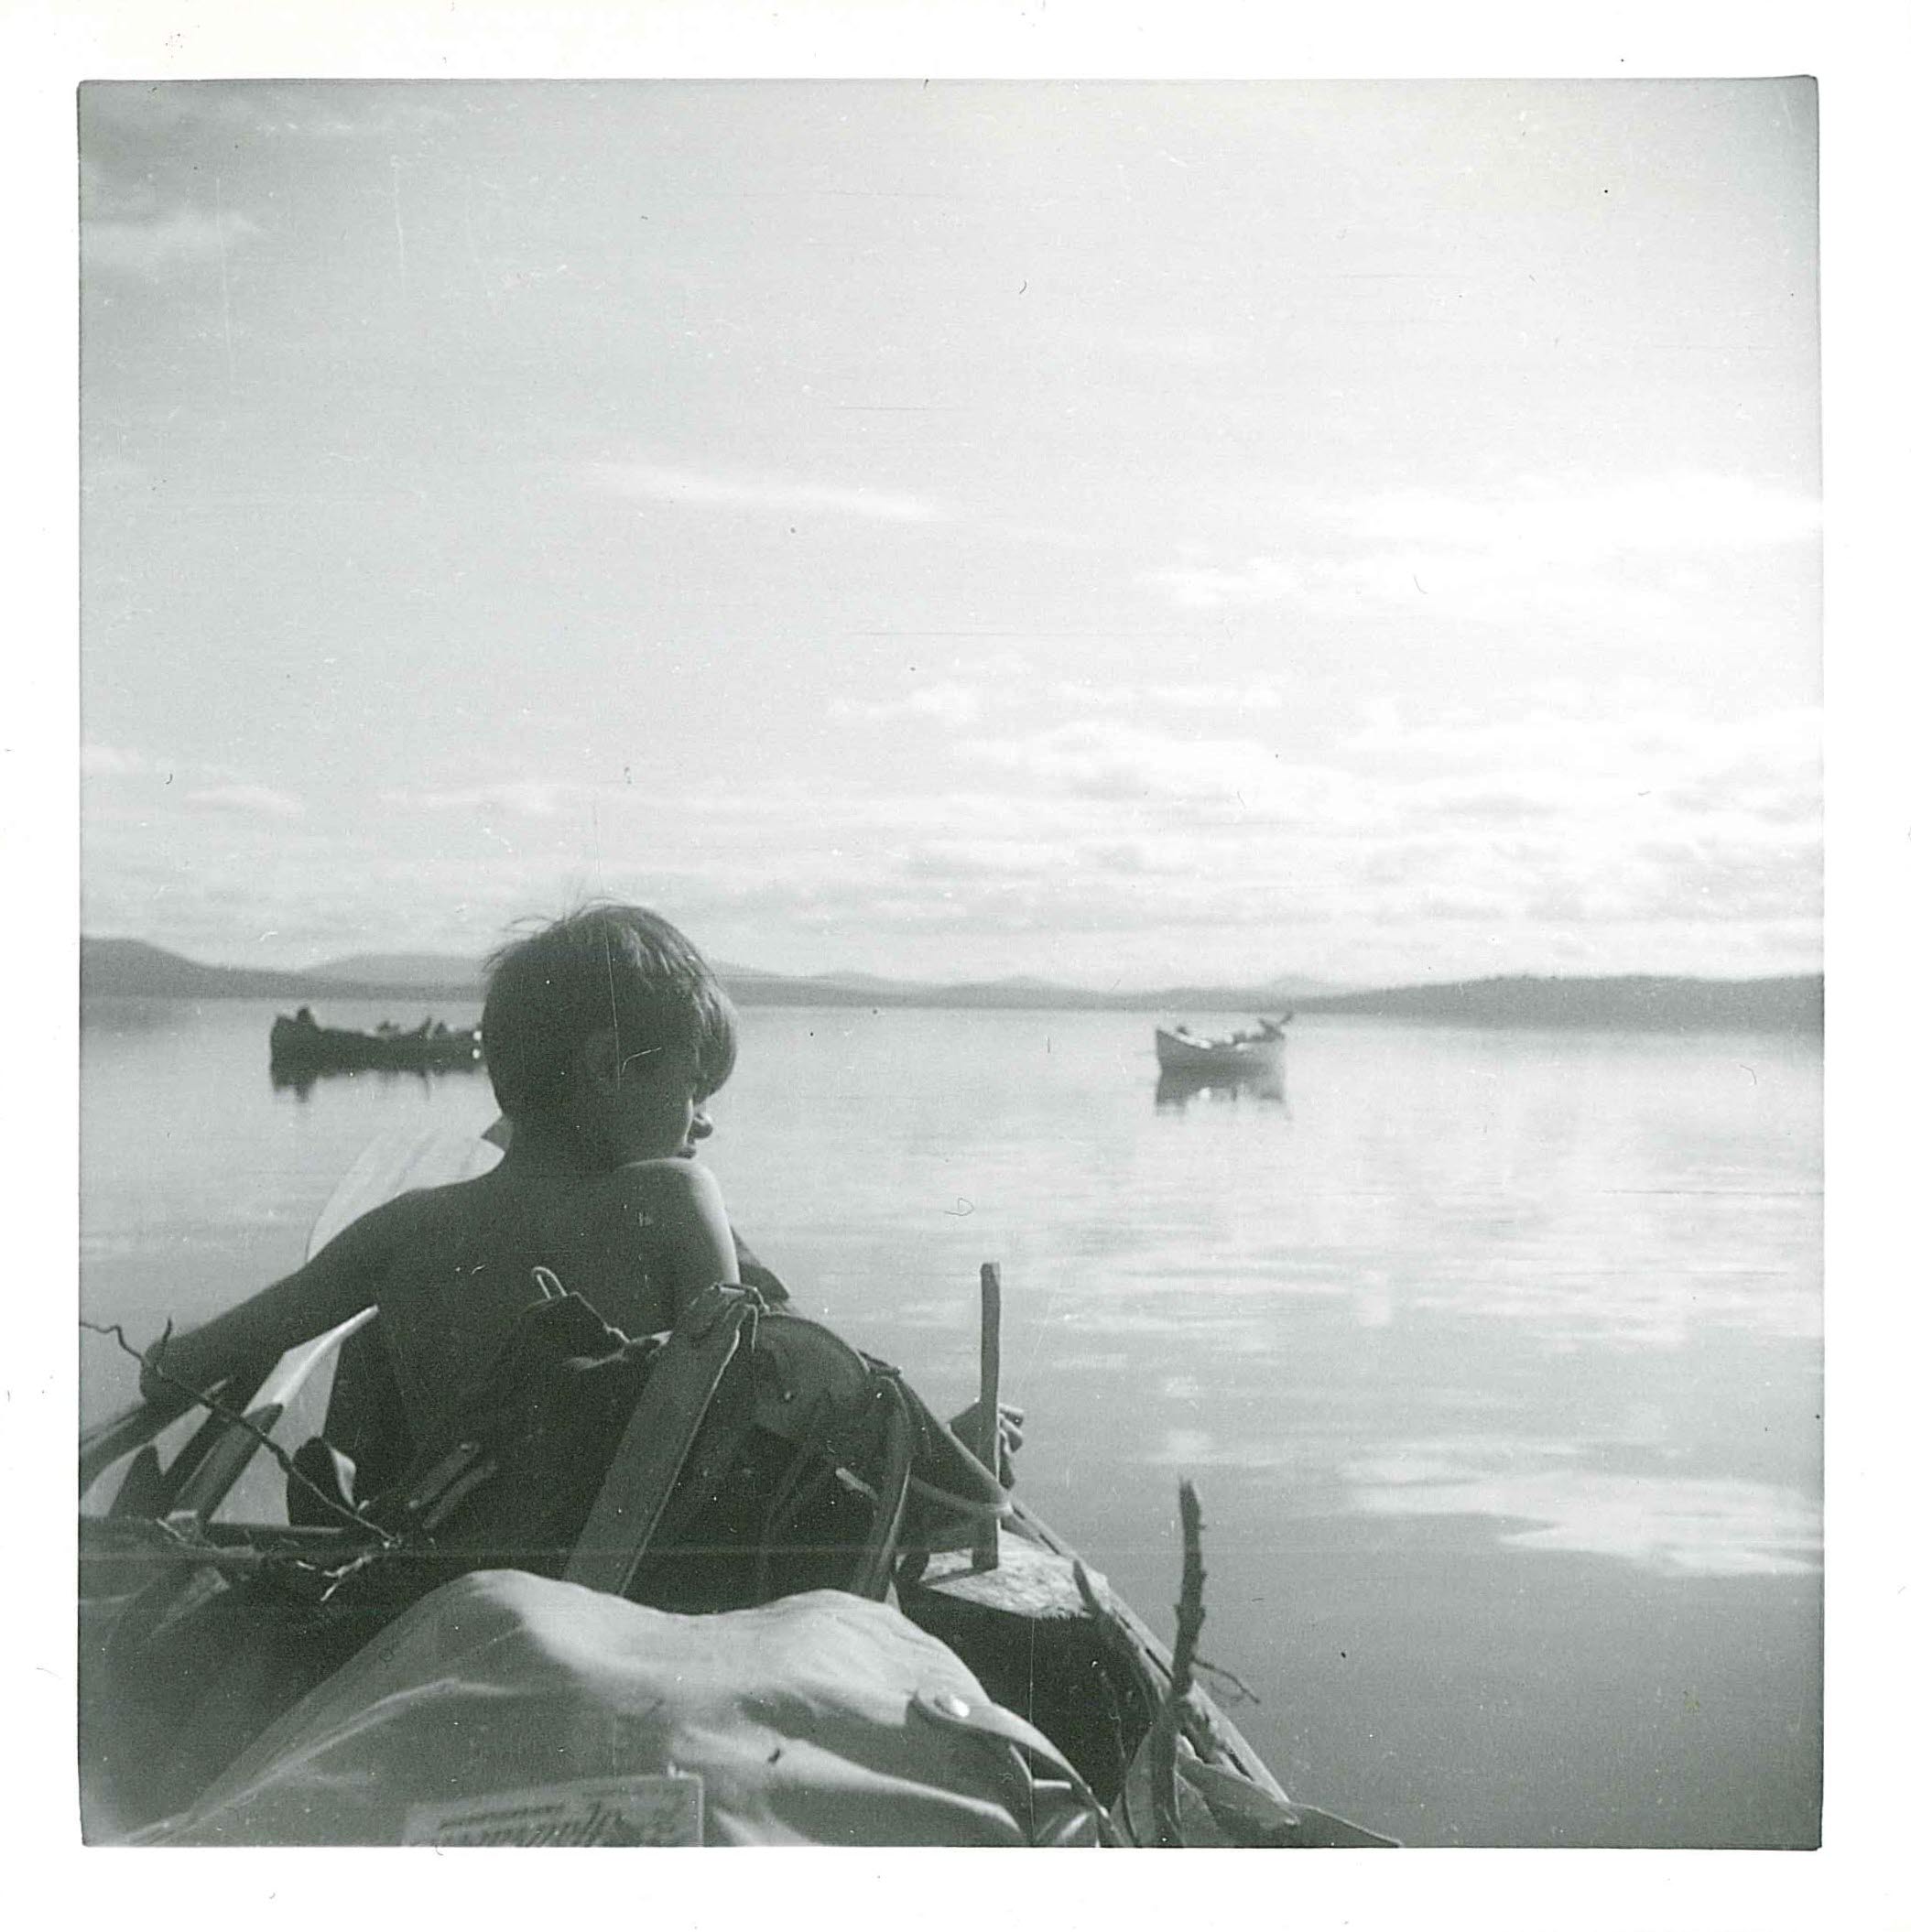 Pojke i kanot tittar ut över sjö